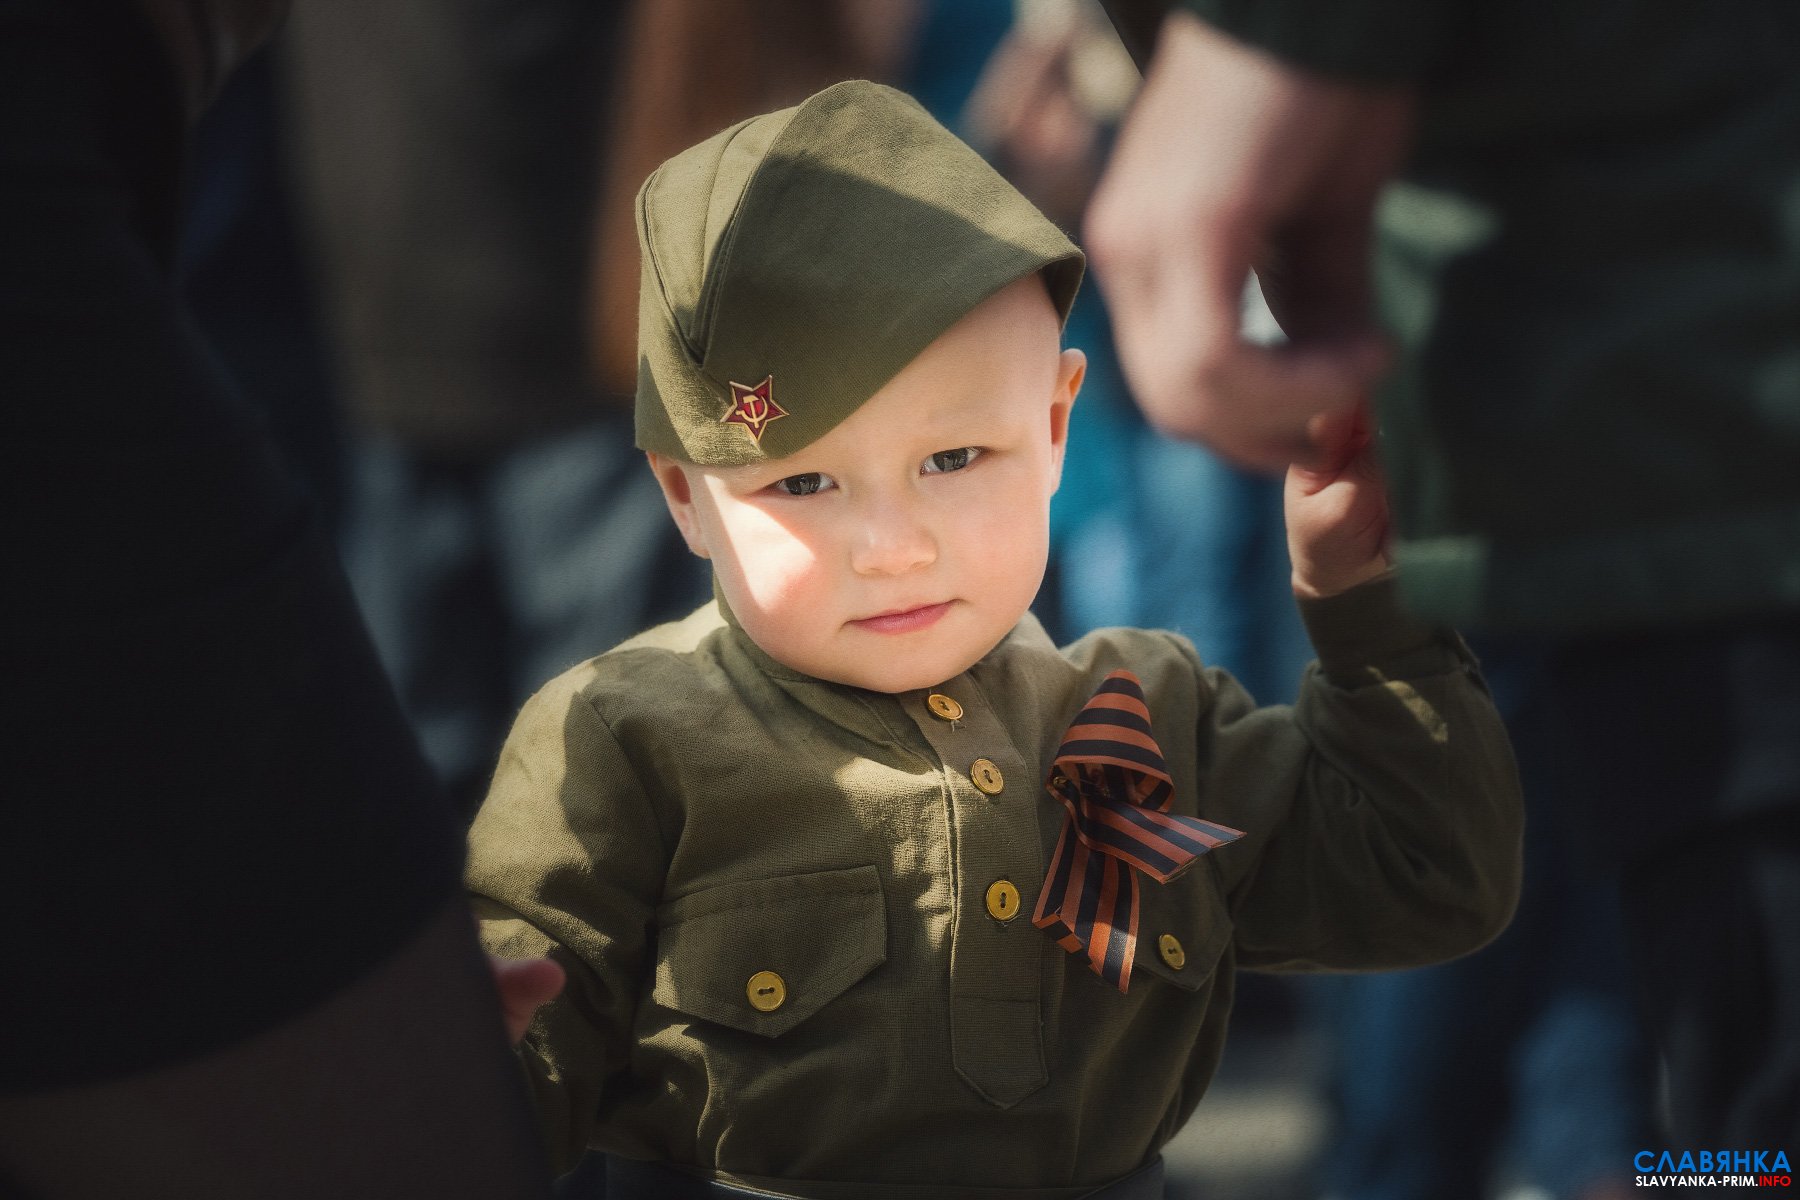 Сайт военной детской. Дети в военной форме. Малыш в военной форме. Маленькие дети в военной форме. Мальчик в военной форме.